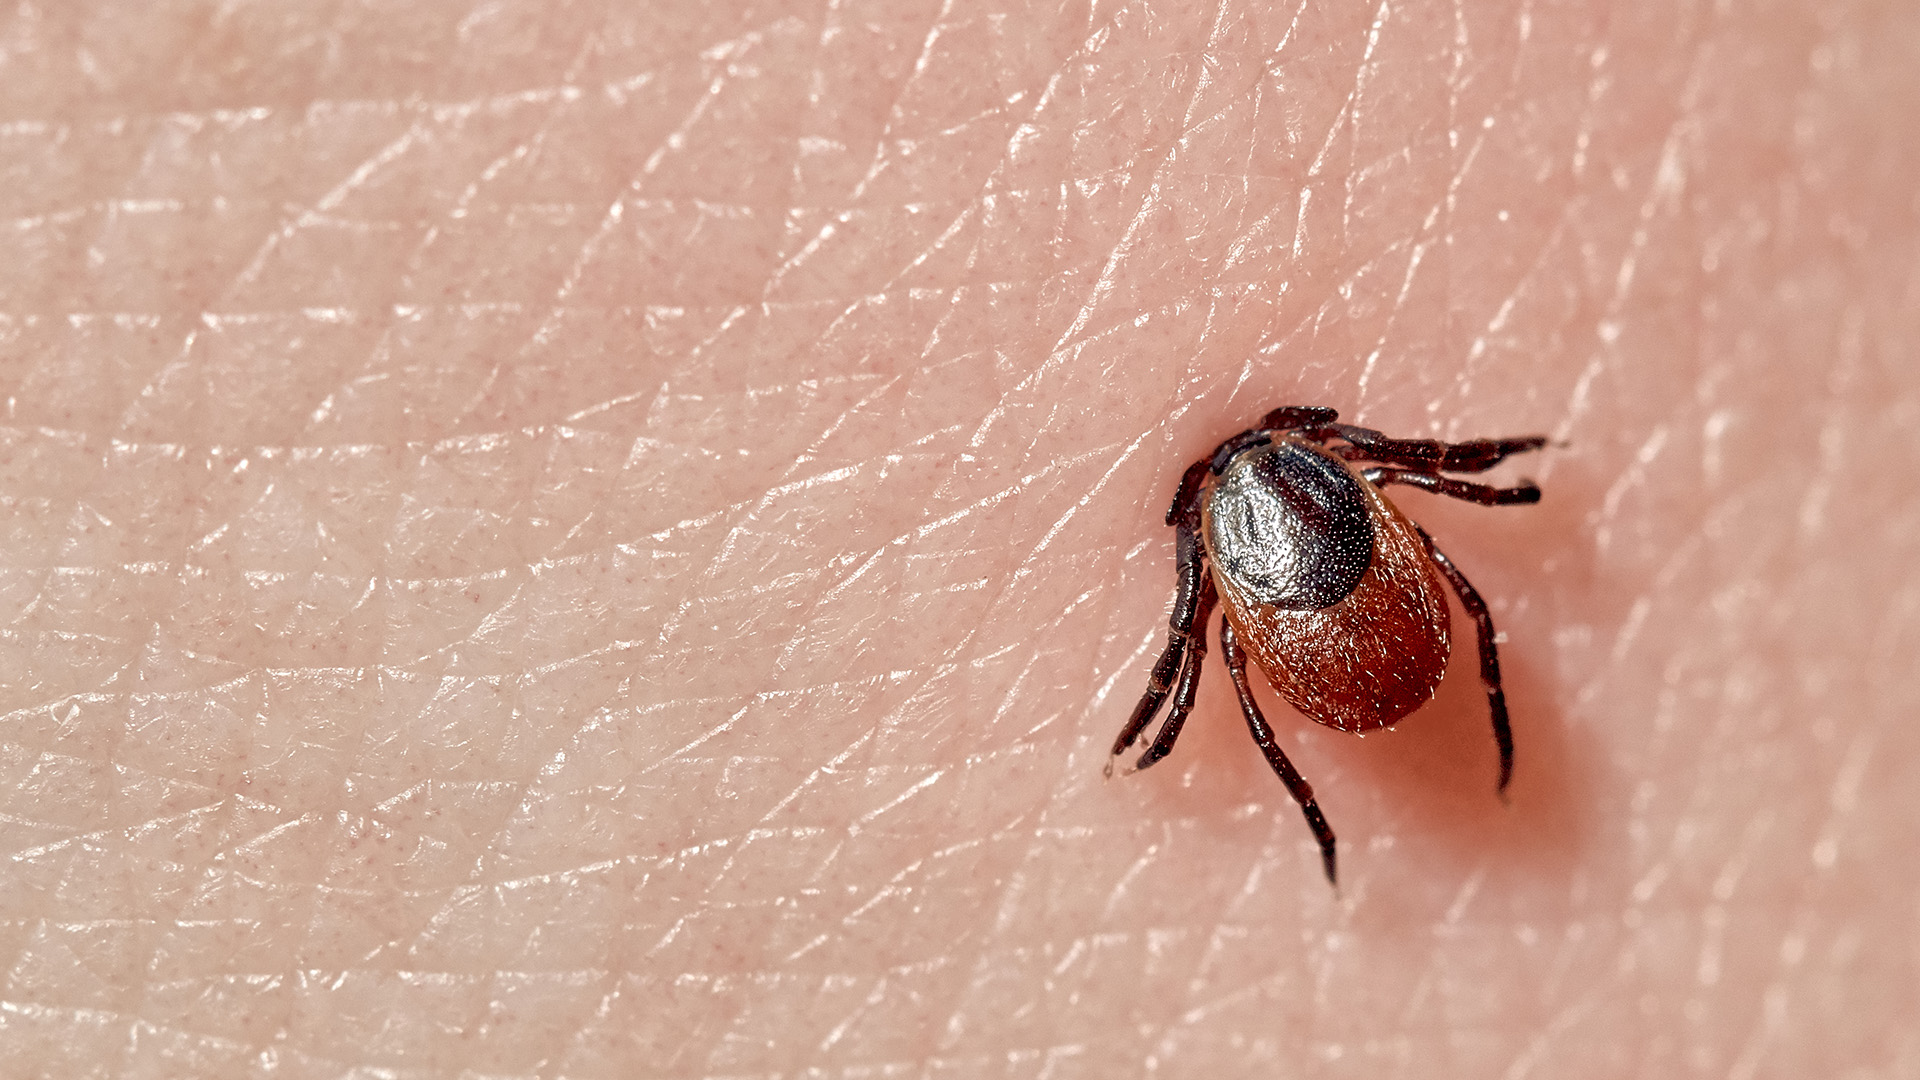 Ticks are Spreaders of Disease